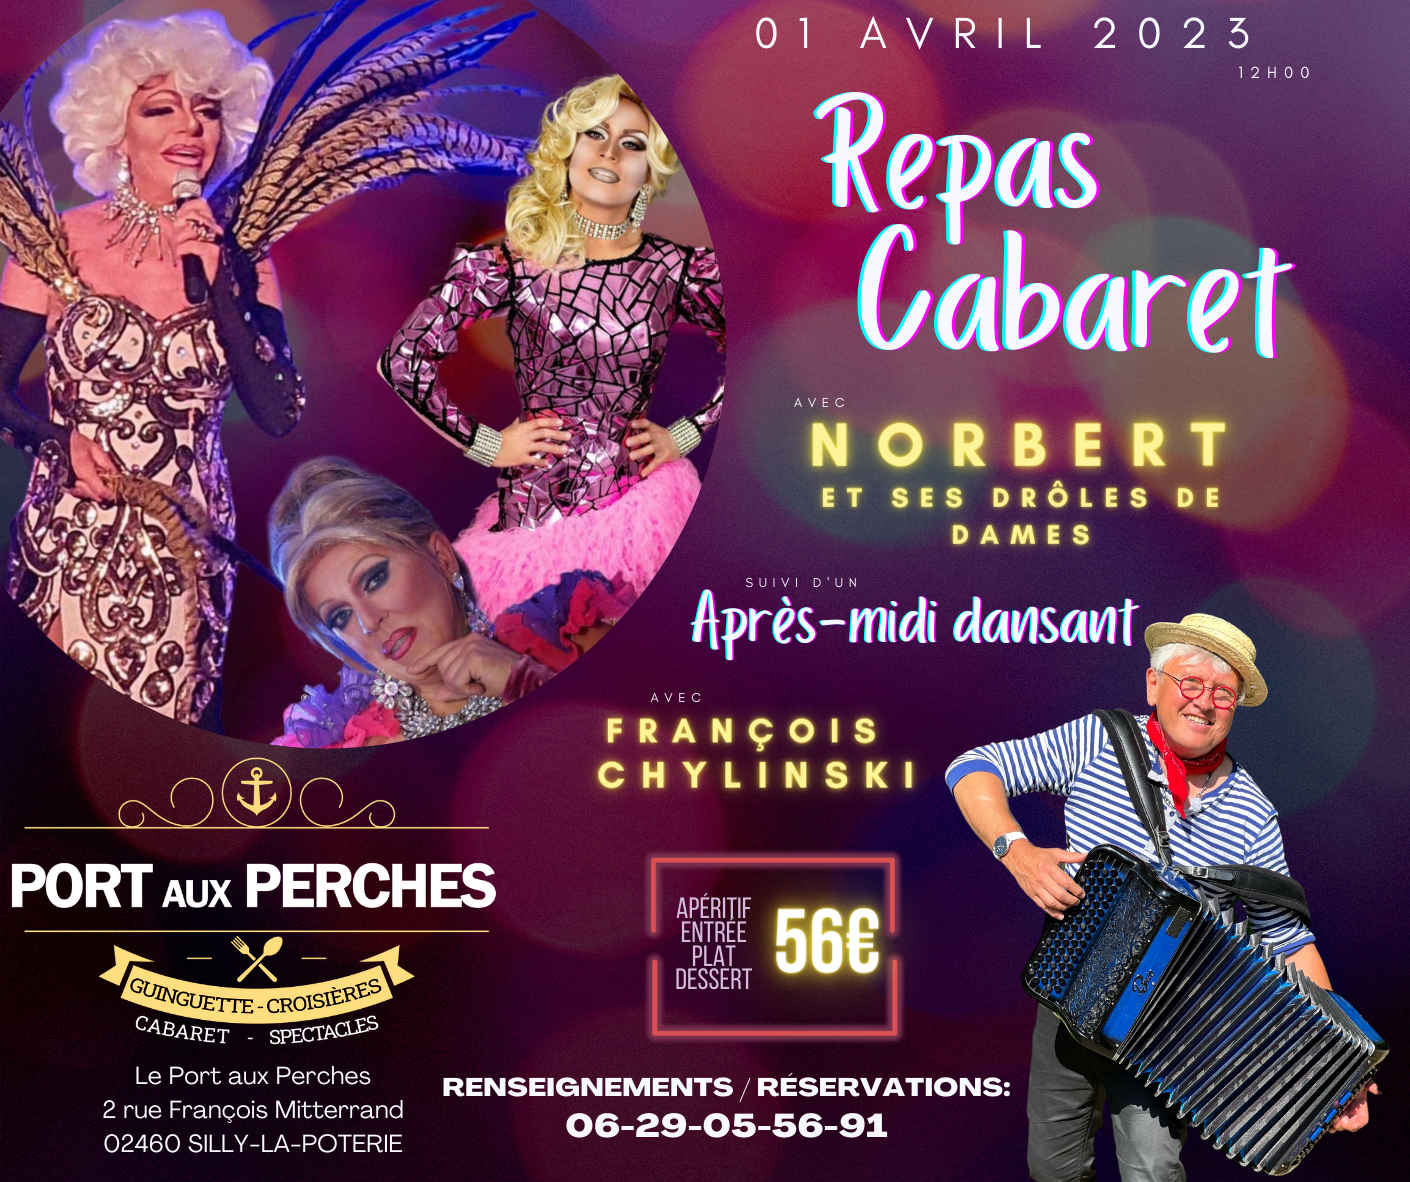 Cabaret 1 avril 2023 norbert et ses droles de dame port aux perches